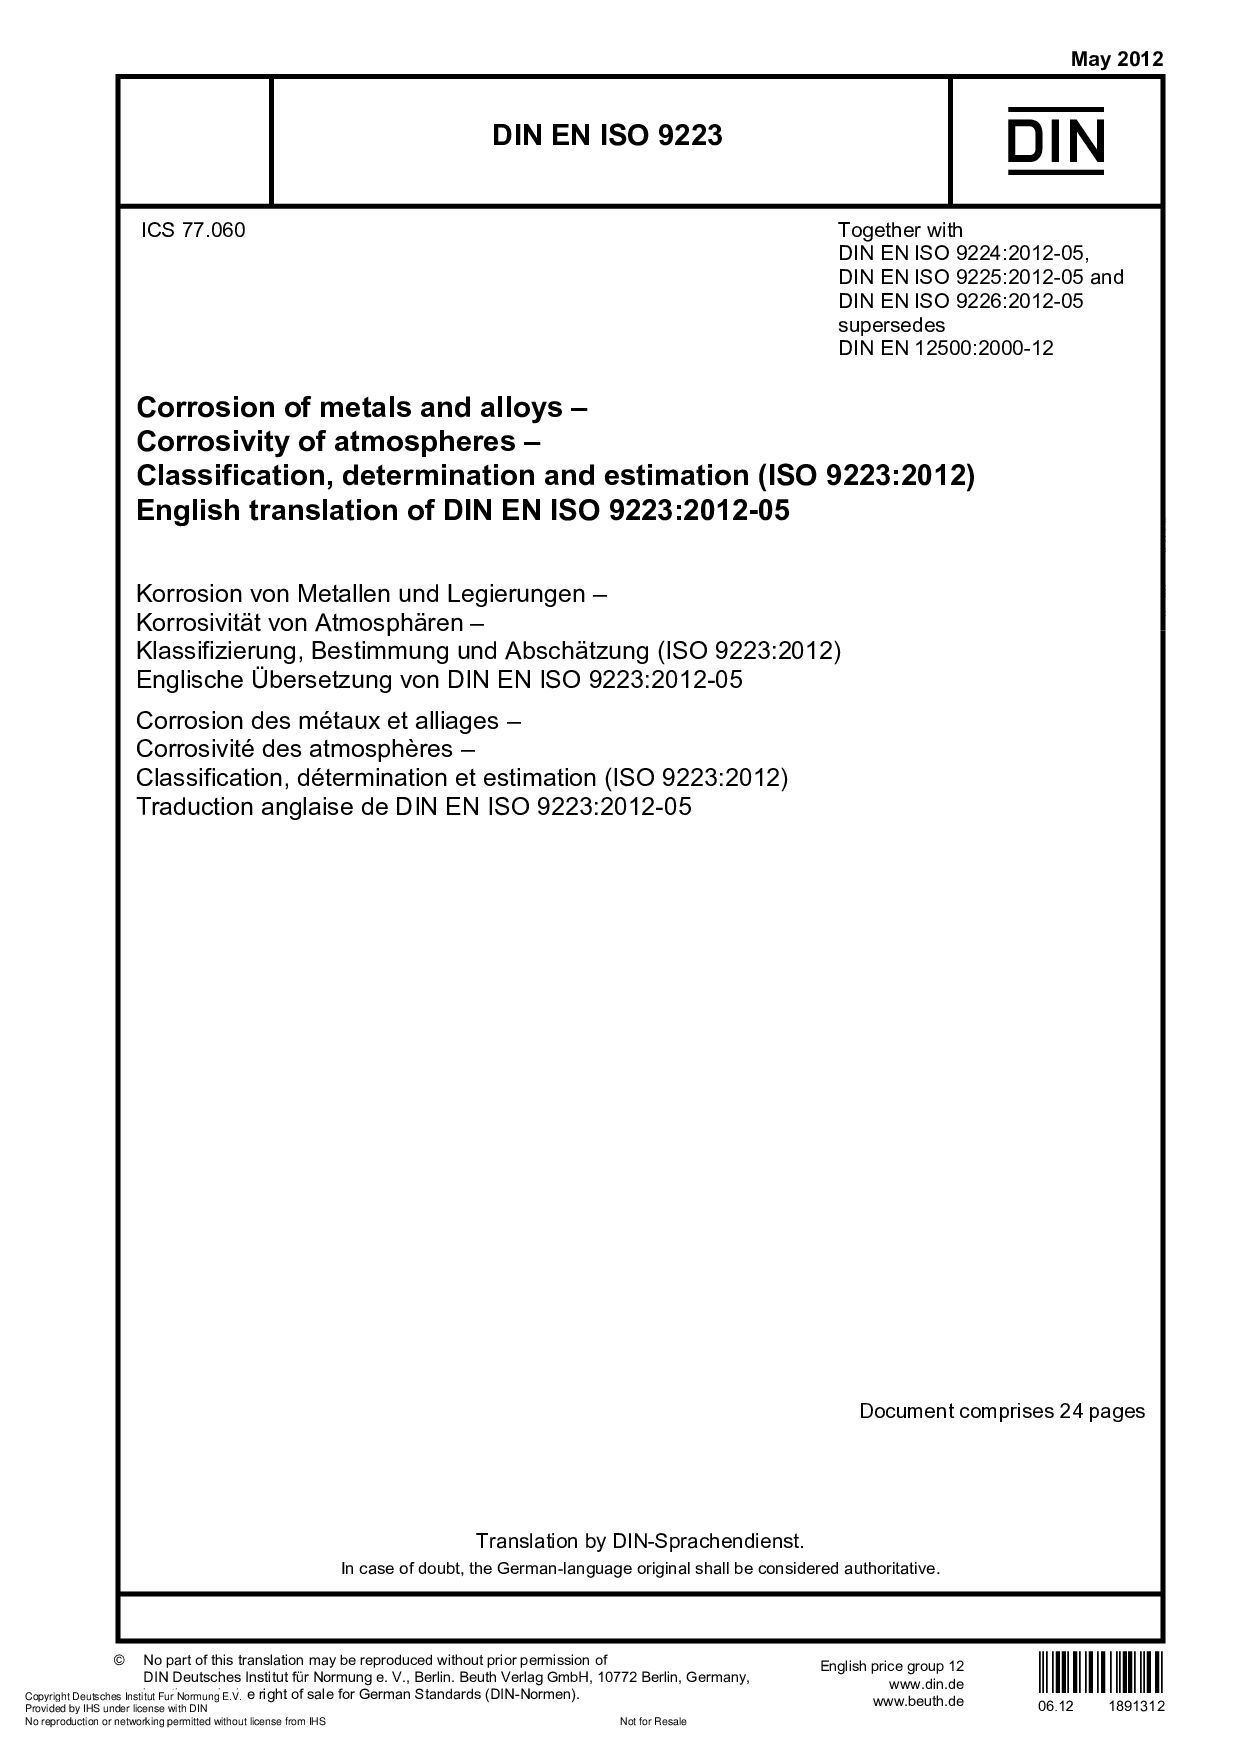 DIN EN ISO 9223:2012封面图